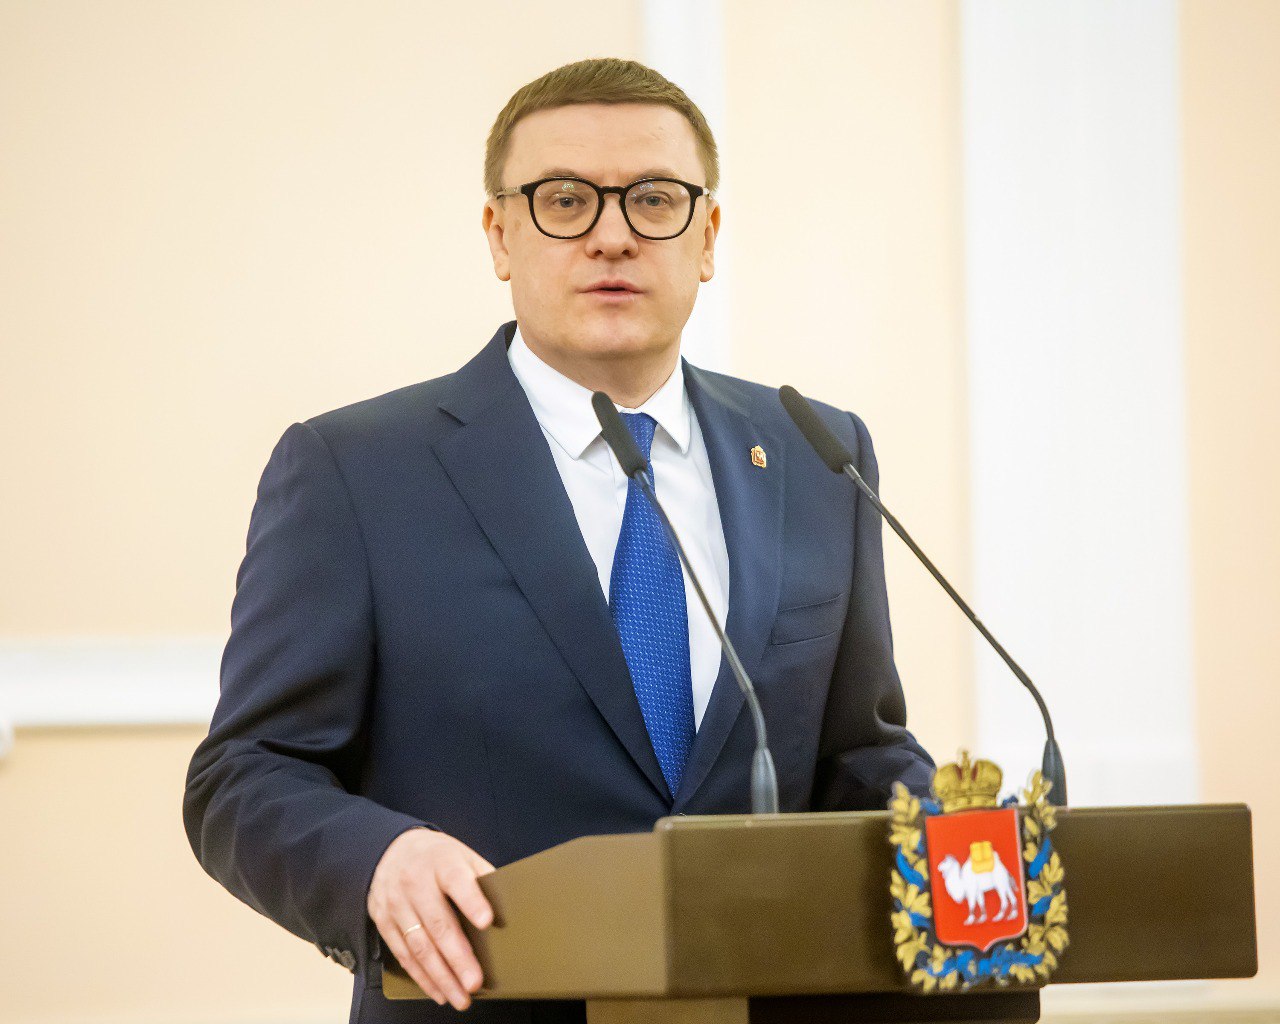 Алексей Текслер стал самым упоминаемым губернатором УрФО в мессенджерах